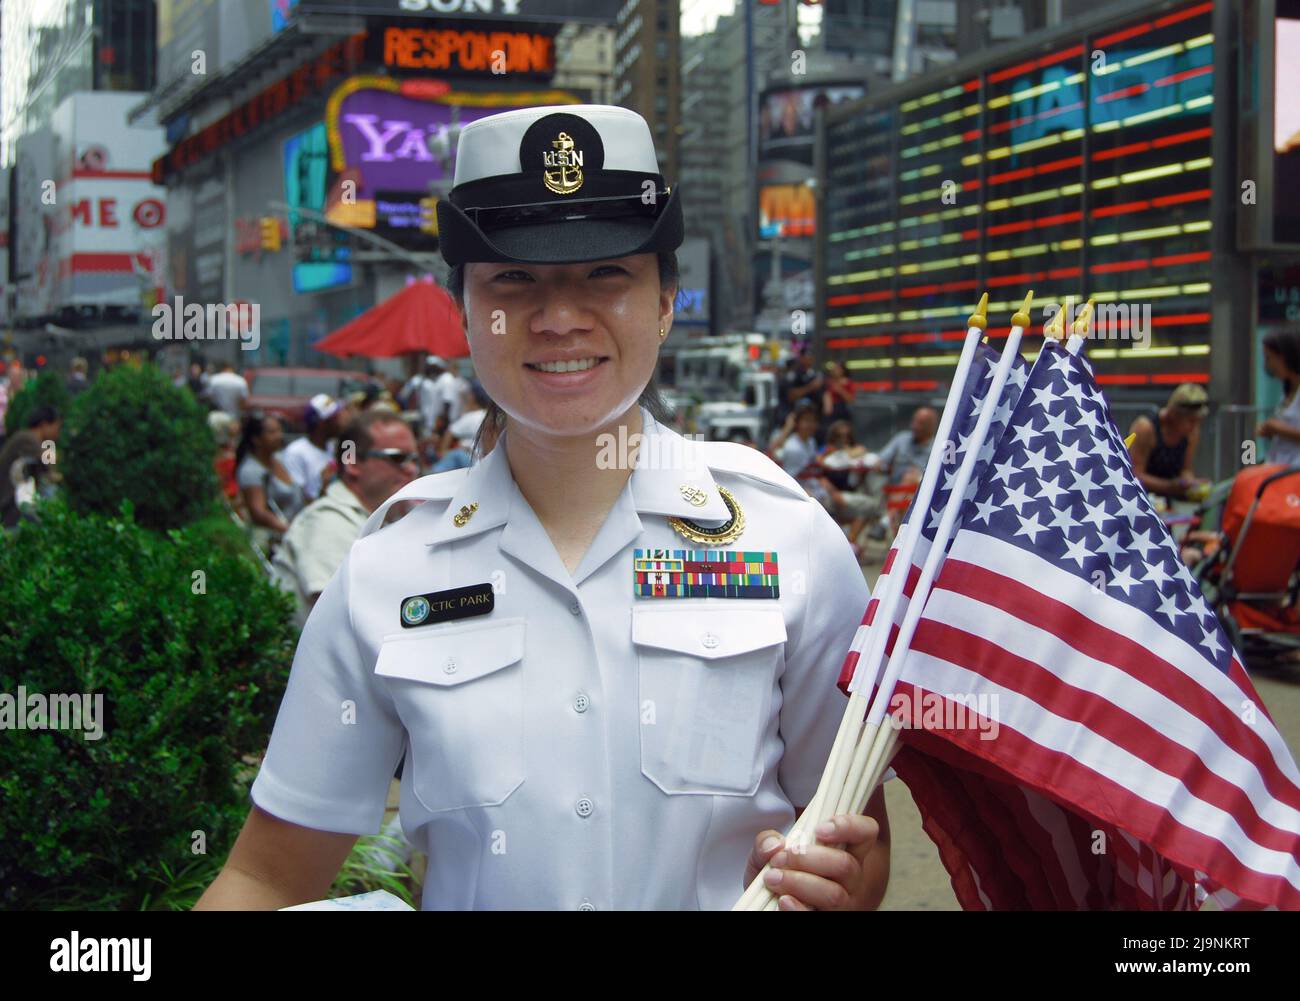 CTIC Park, eine Navy-Frau mit mehreren Medaillen, posiert mit einer Handvoll auf amerikanischen Fahnen bei einer Rekrutierungsveranstaltung. Am Times Square, New York City. Stockfoto